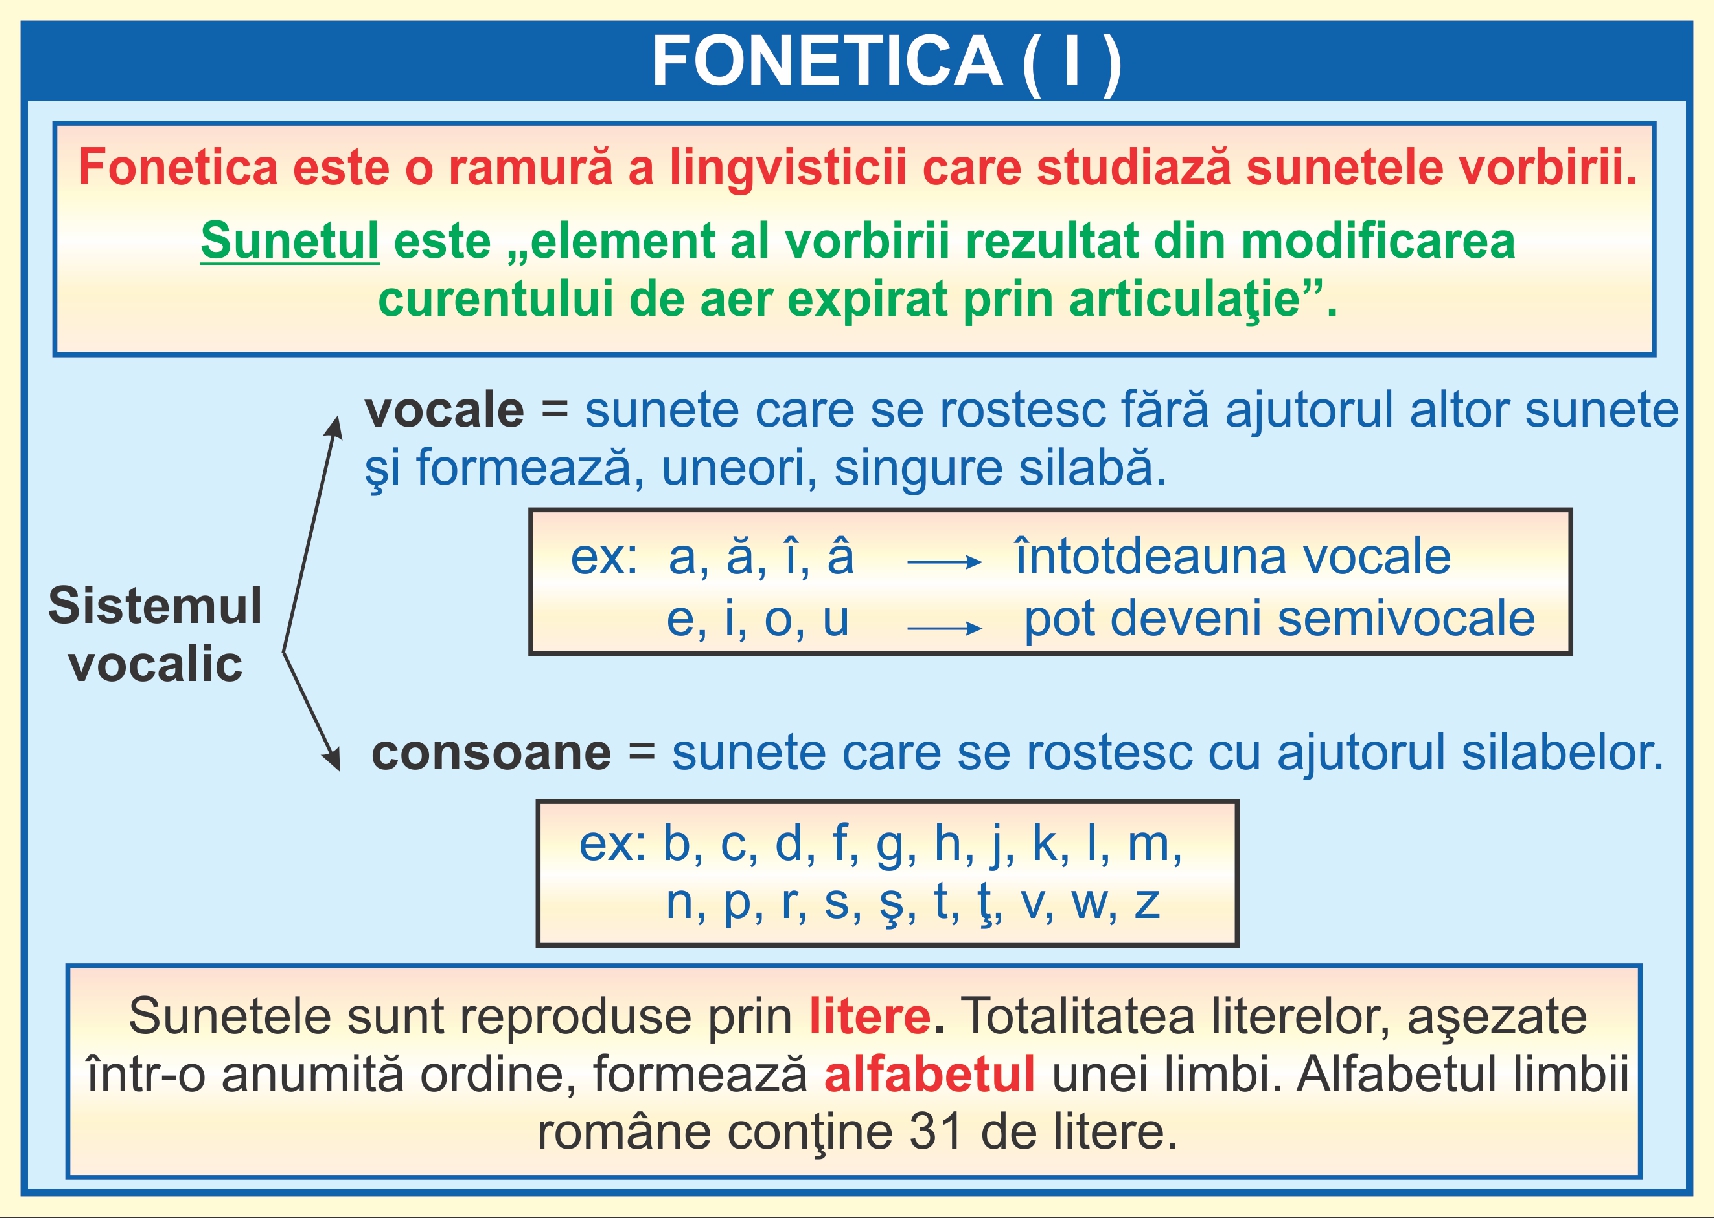 Fonetica - I